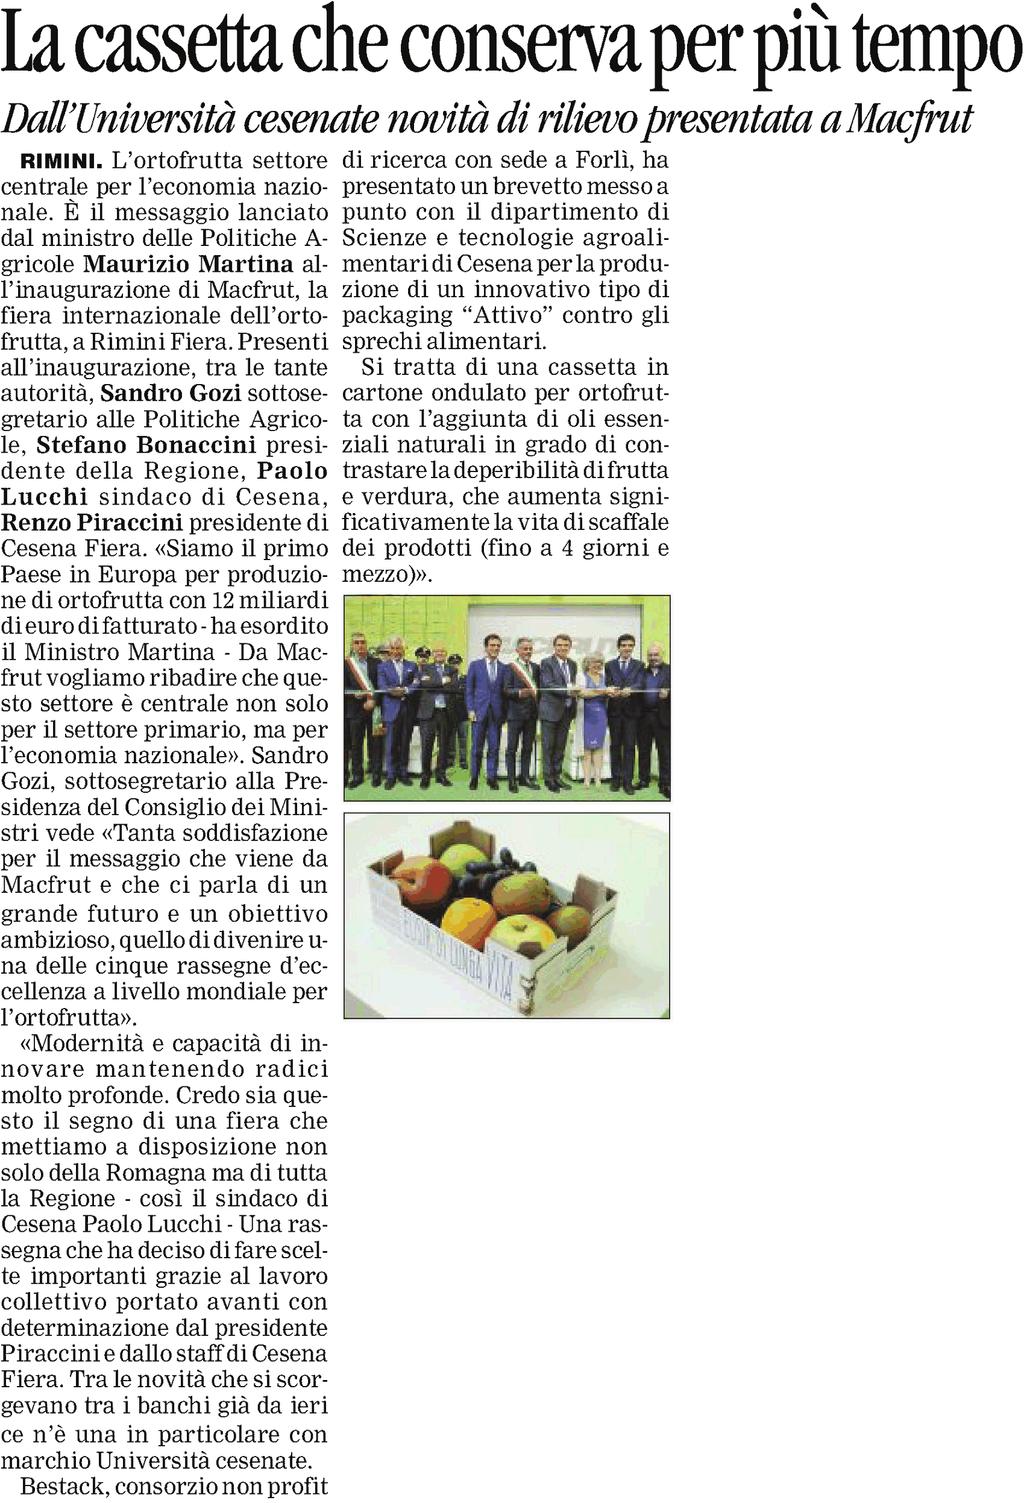 Corriere Romagna di Forlì e Cesena (ITA) 15 Settembre 2016 Paese: it Pagina: 36 Tipo media: Stampa locale